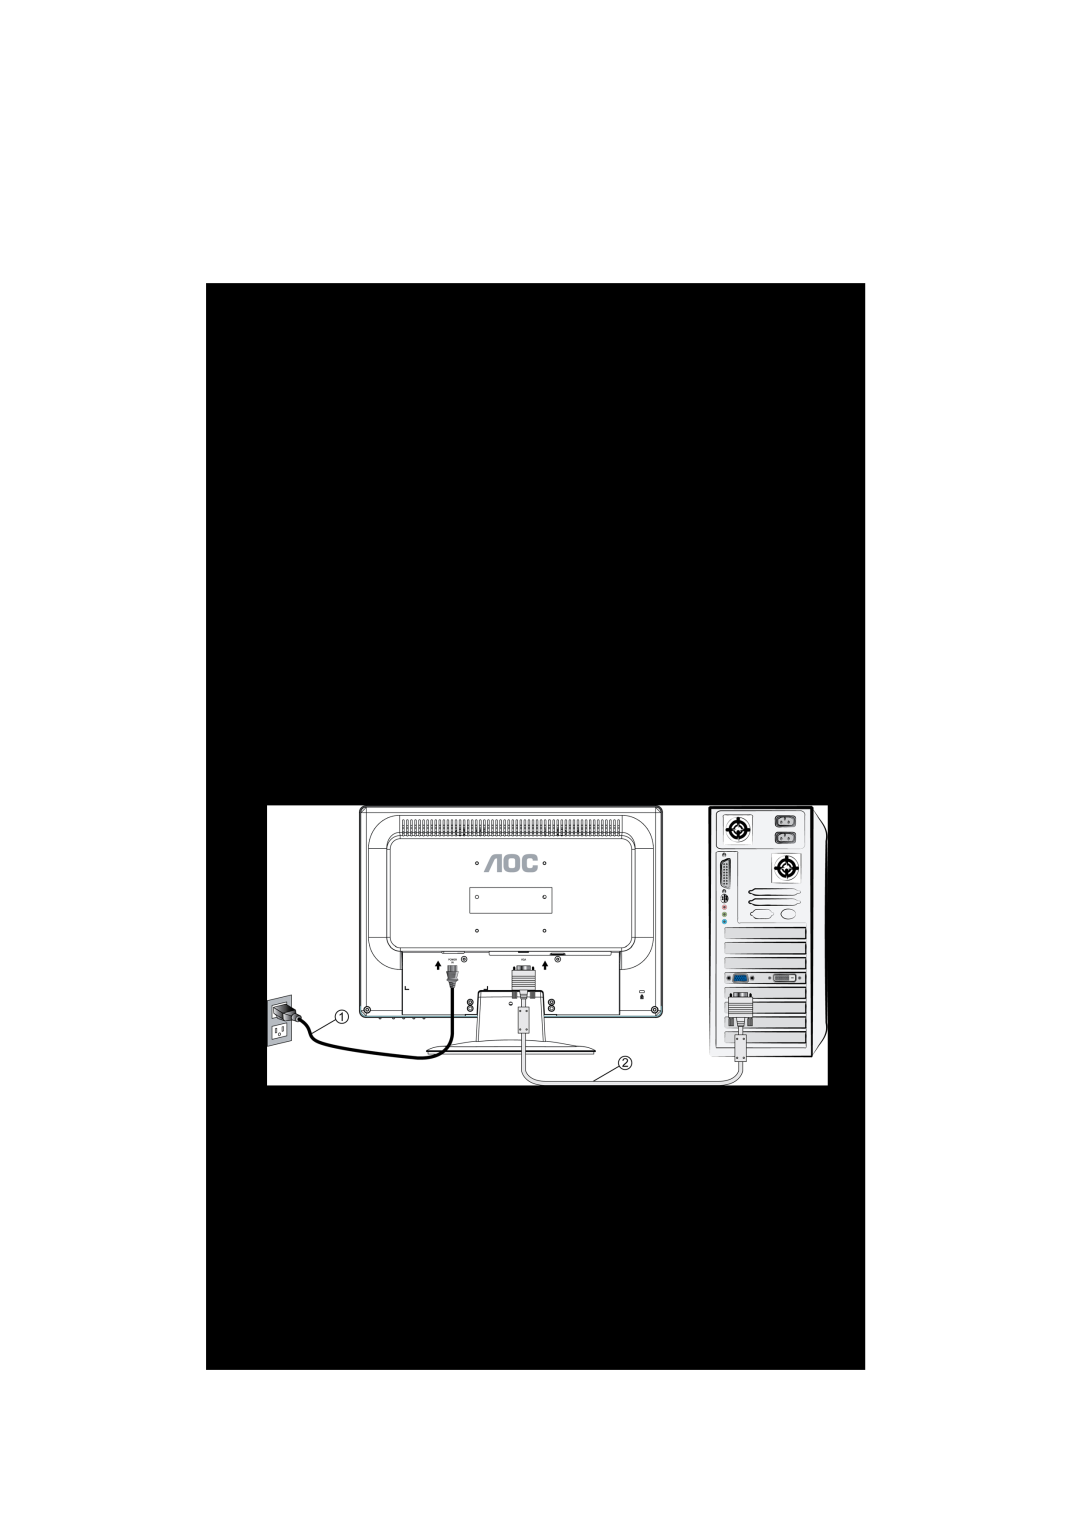 AOC 919Sw-1 Connecter le moniteur, Connectez le cordon dalimentation, Connecter le câble Analogique vidéo Câble D-Sub 